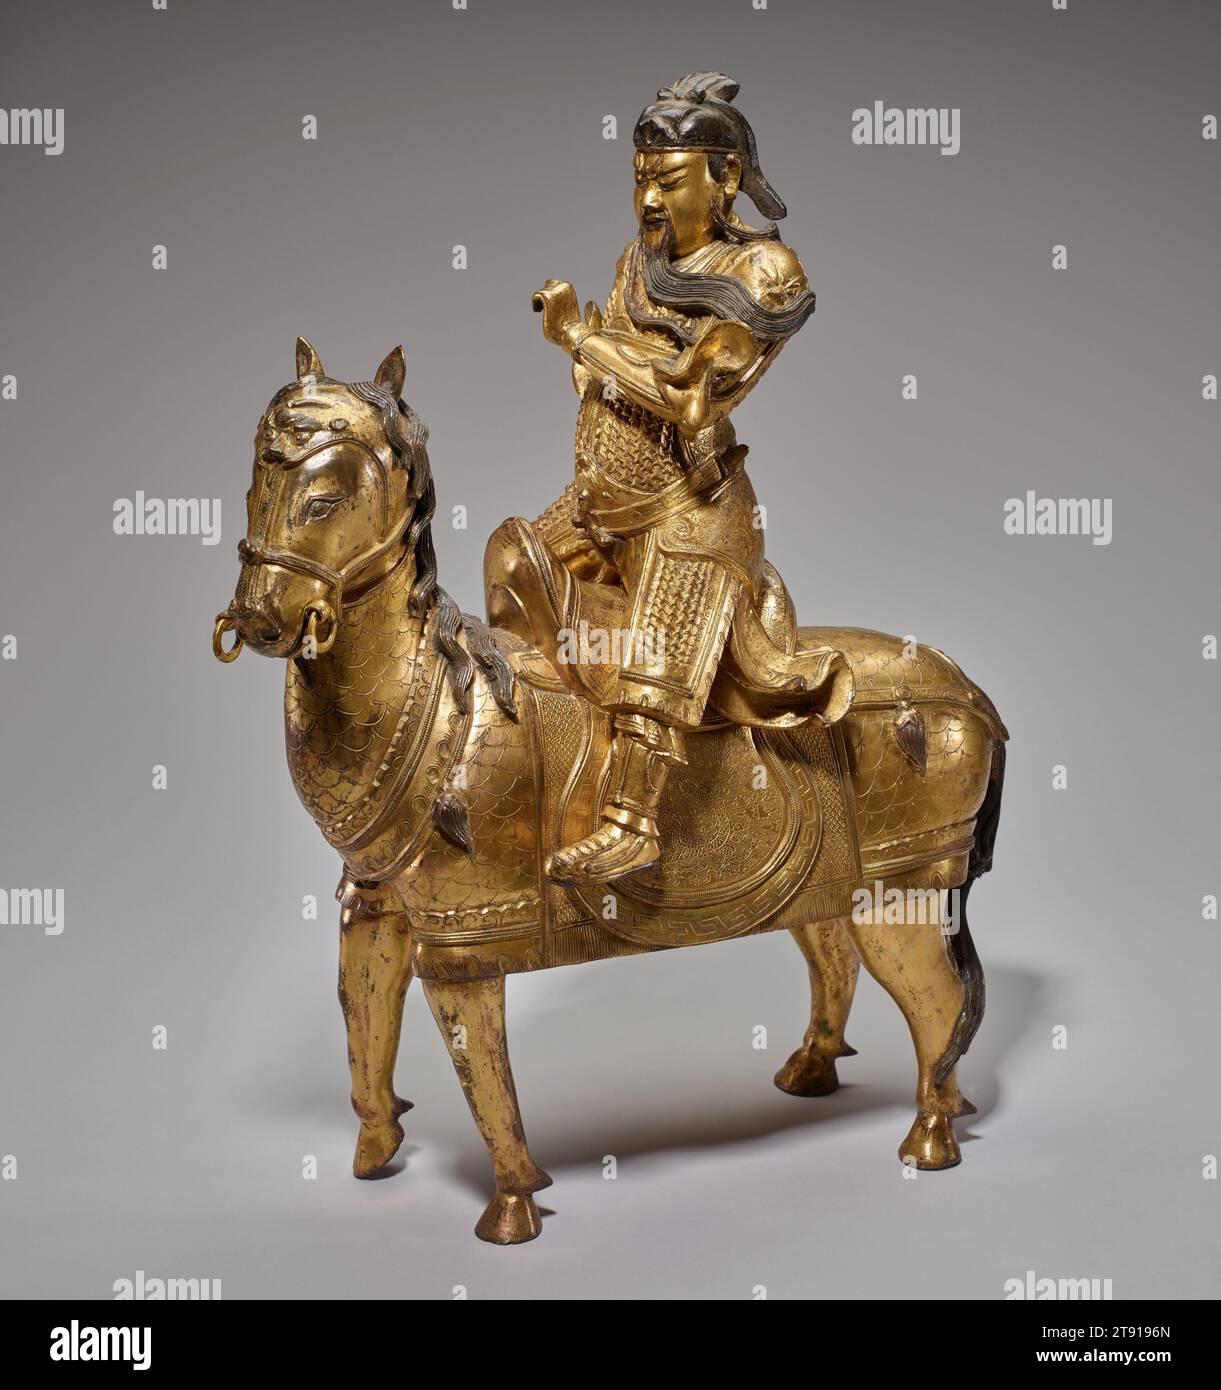 Général Guan Yu à cheval, 16e siècle, 20 1/4 x 16 1/2 x 7 3/8in. (51,4 x 41,9 x 18.7cm), bronze doré, Chine, 16e siècle Banque D'Images